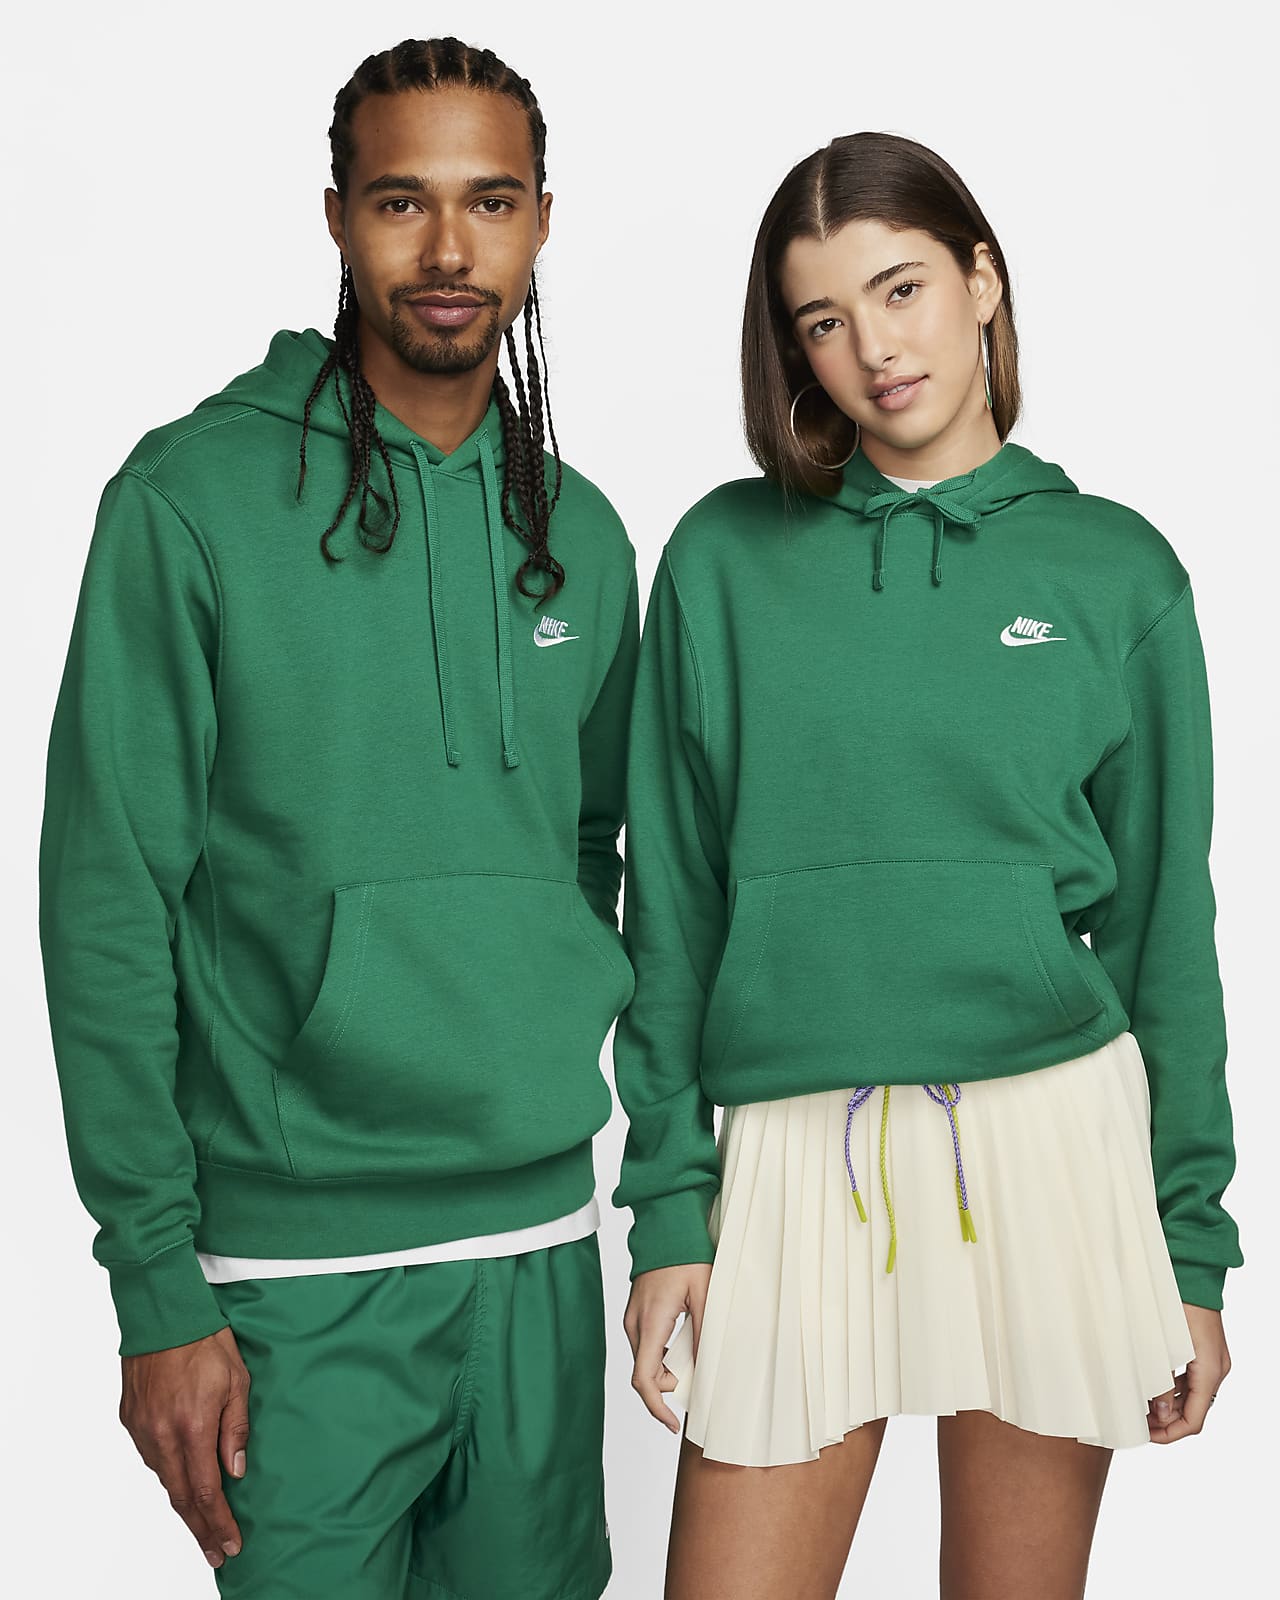 Hoodie pullover Nike Sportswear Club Fleece